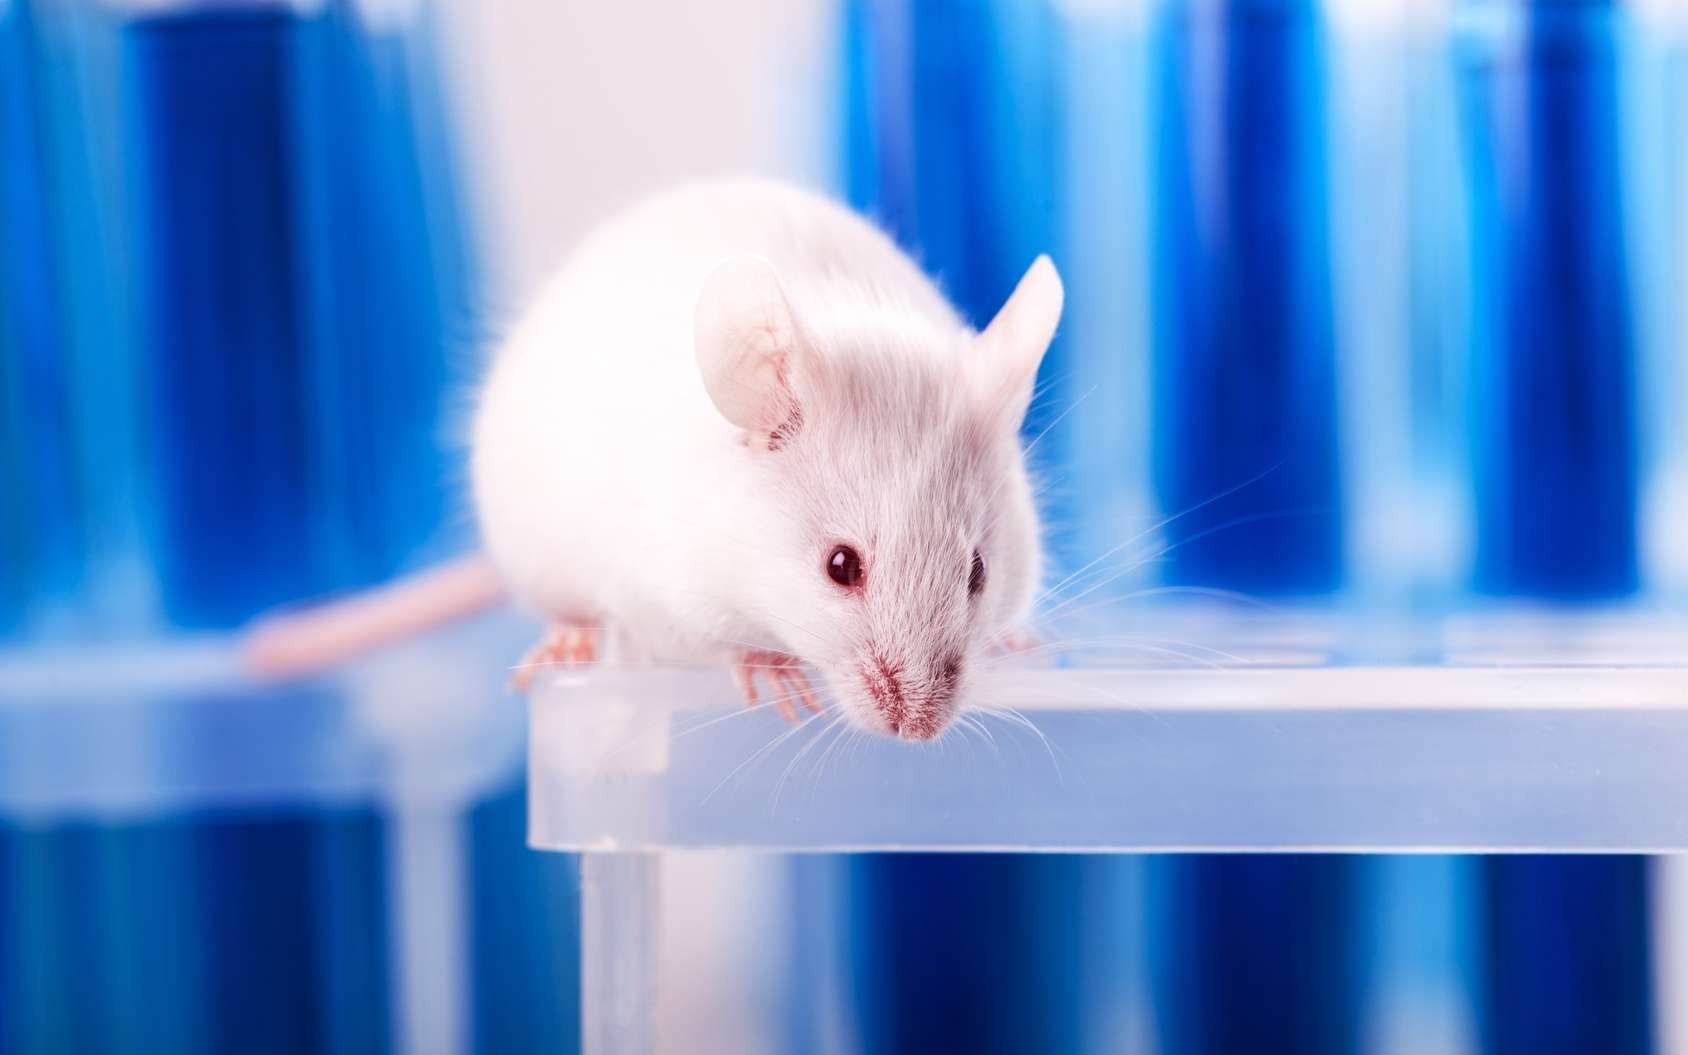 Méditation de pleine conscience : des souris servent de modèle animal